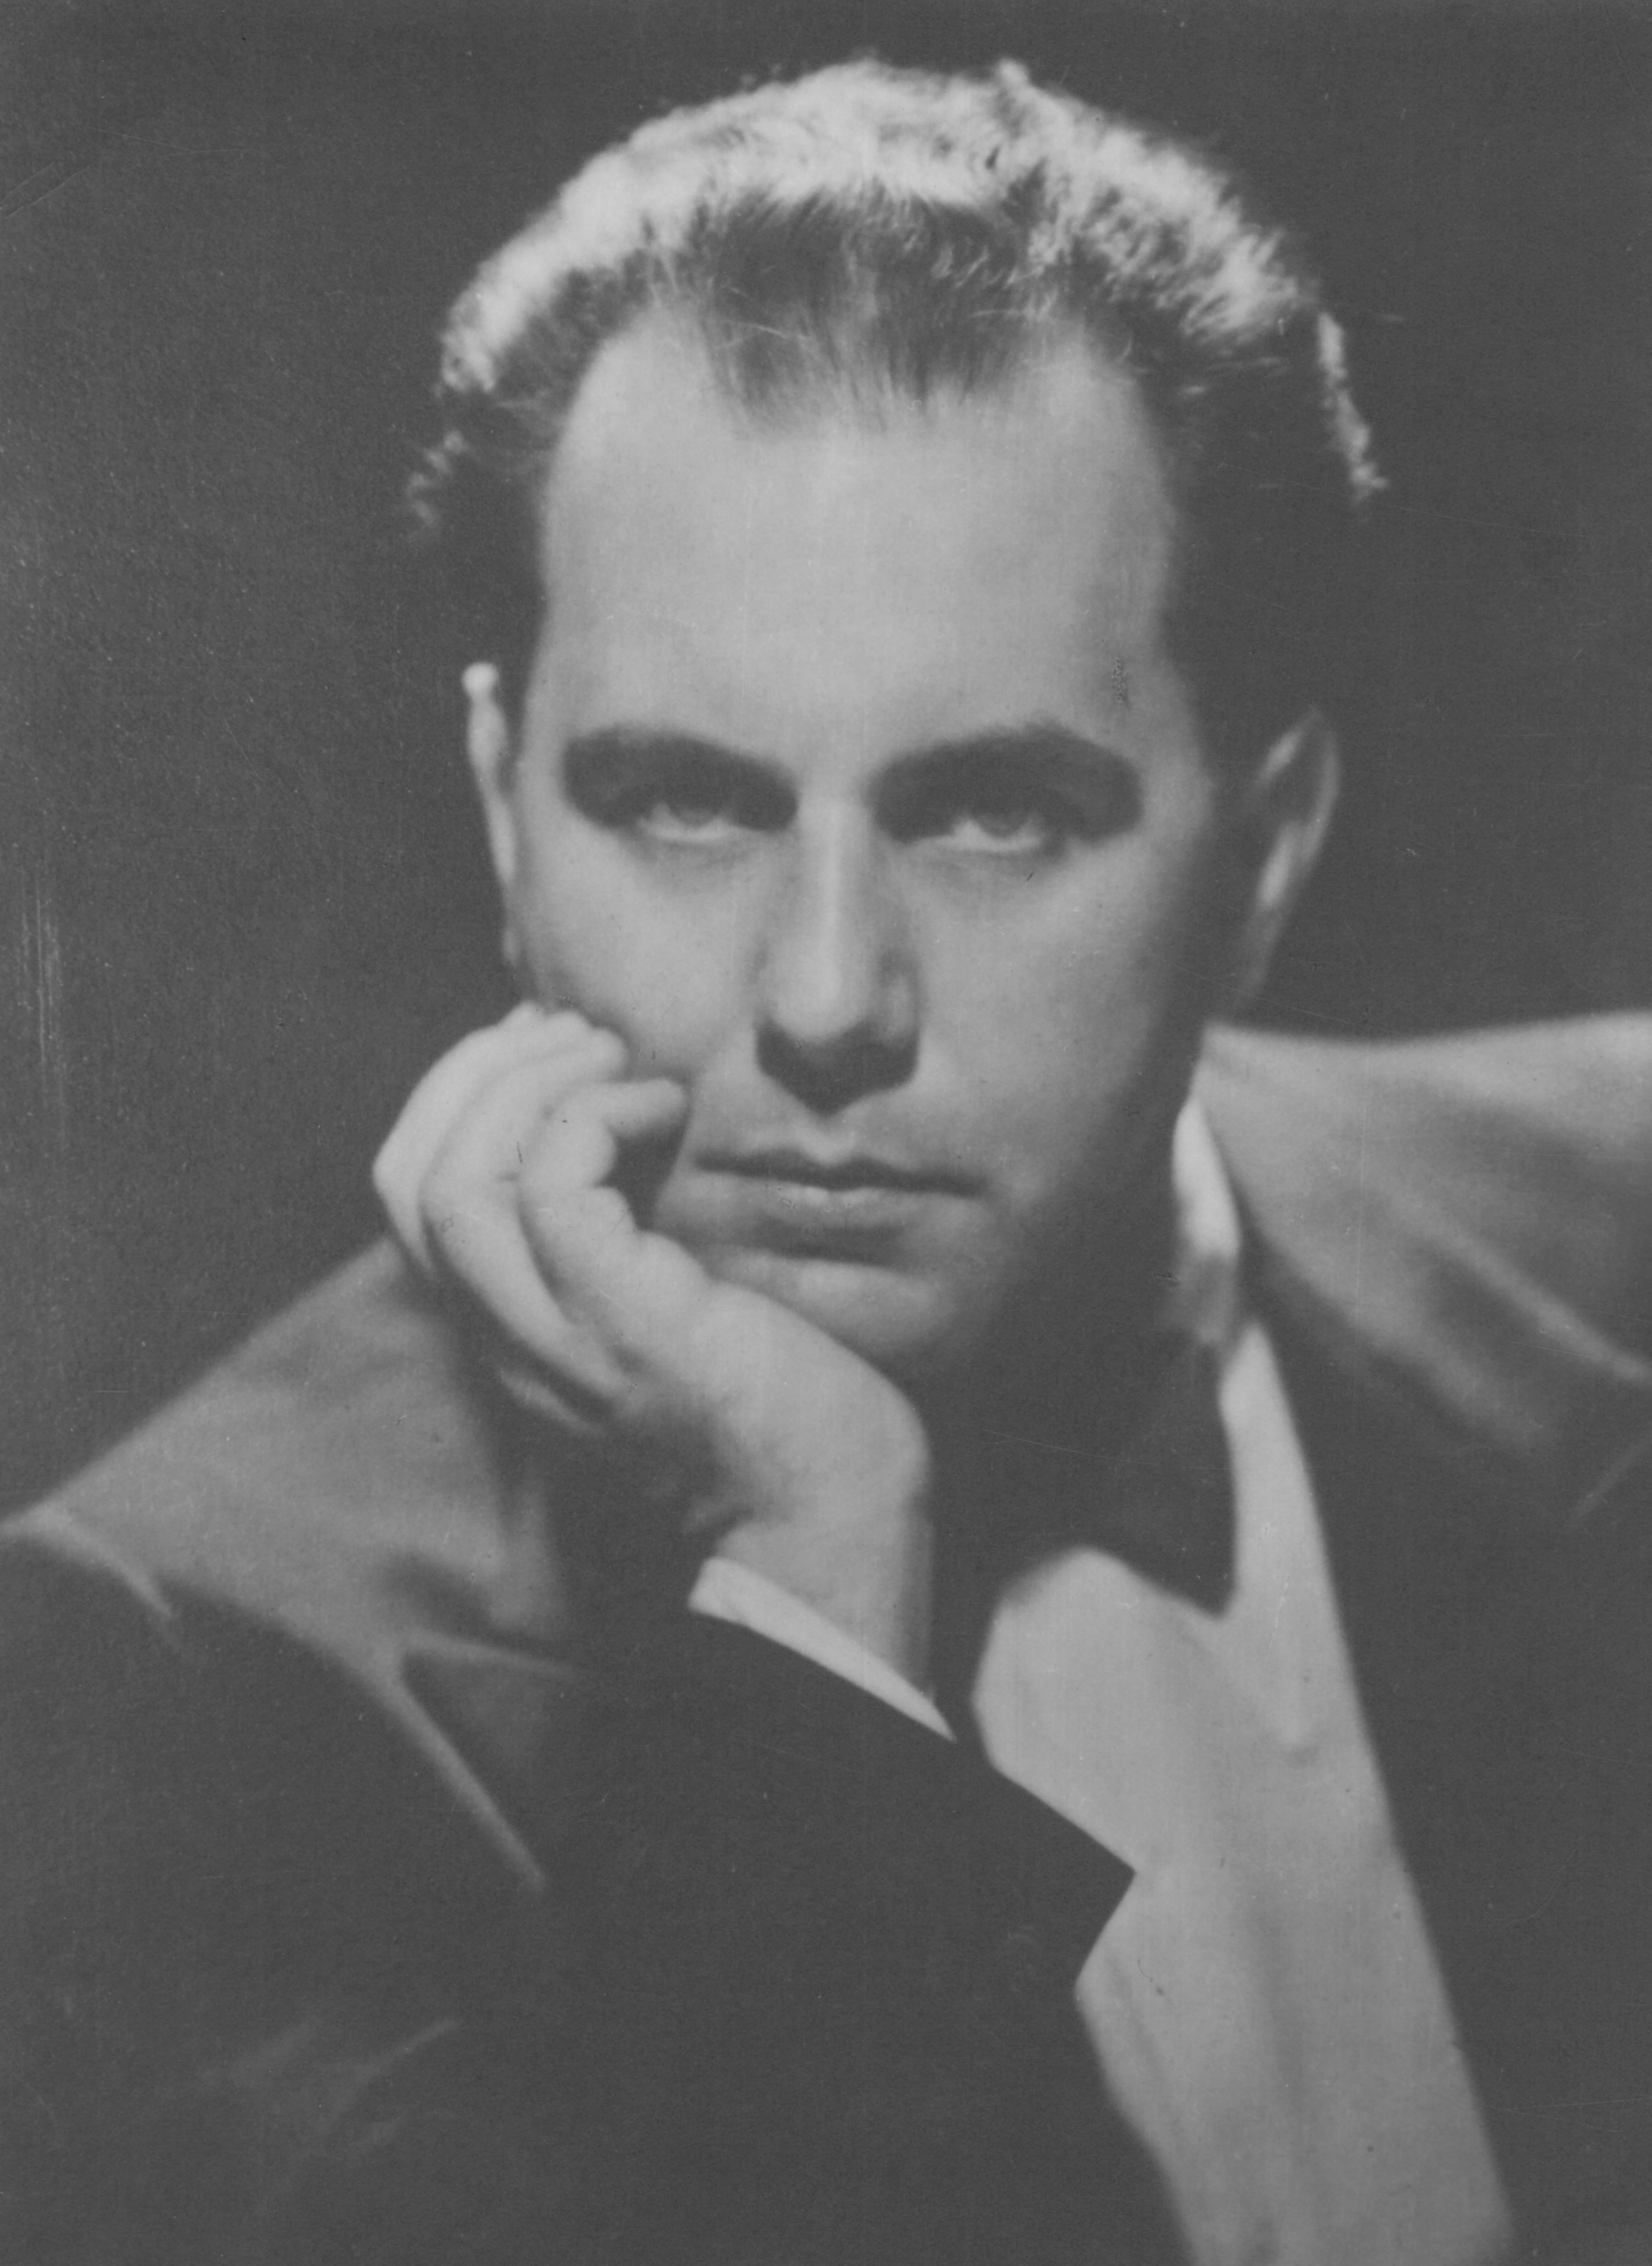 Hans SWAROWSKY à Zürich en 1939 - Cliquer sur la photo pour voir l'original et ses références